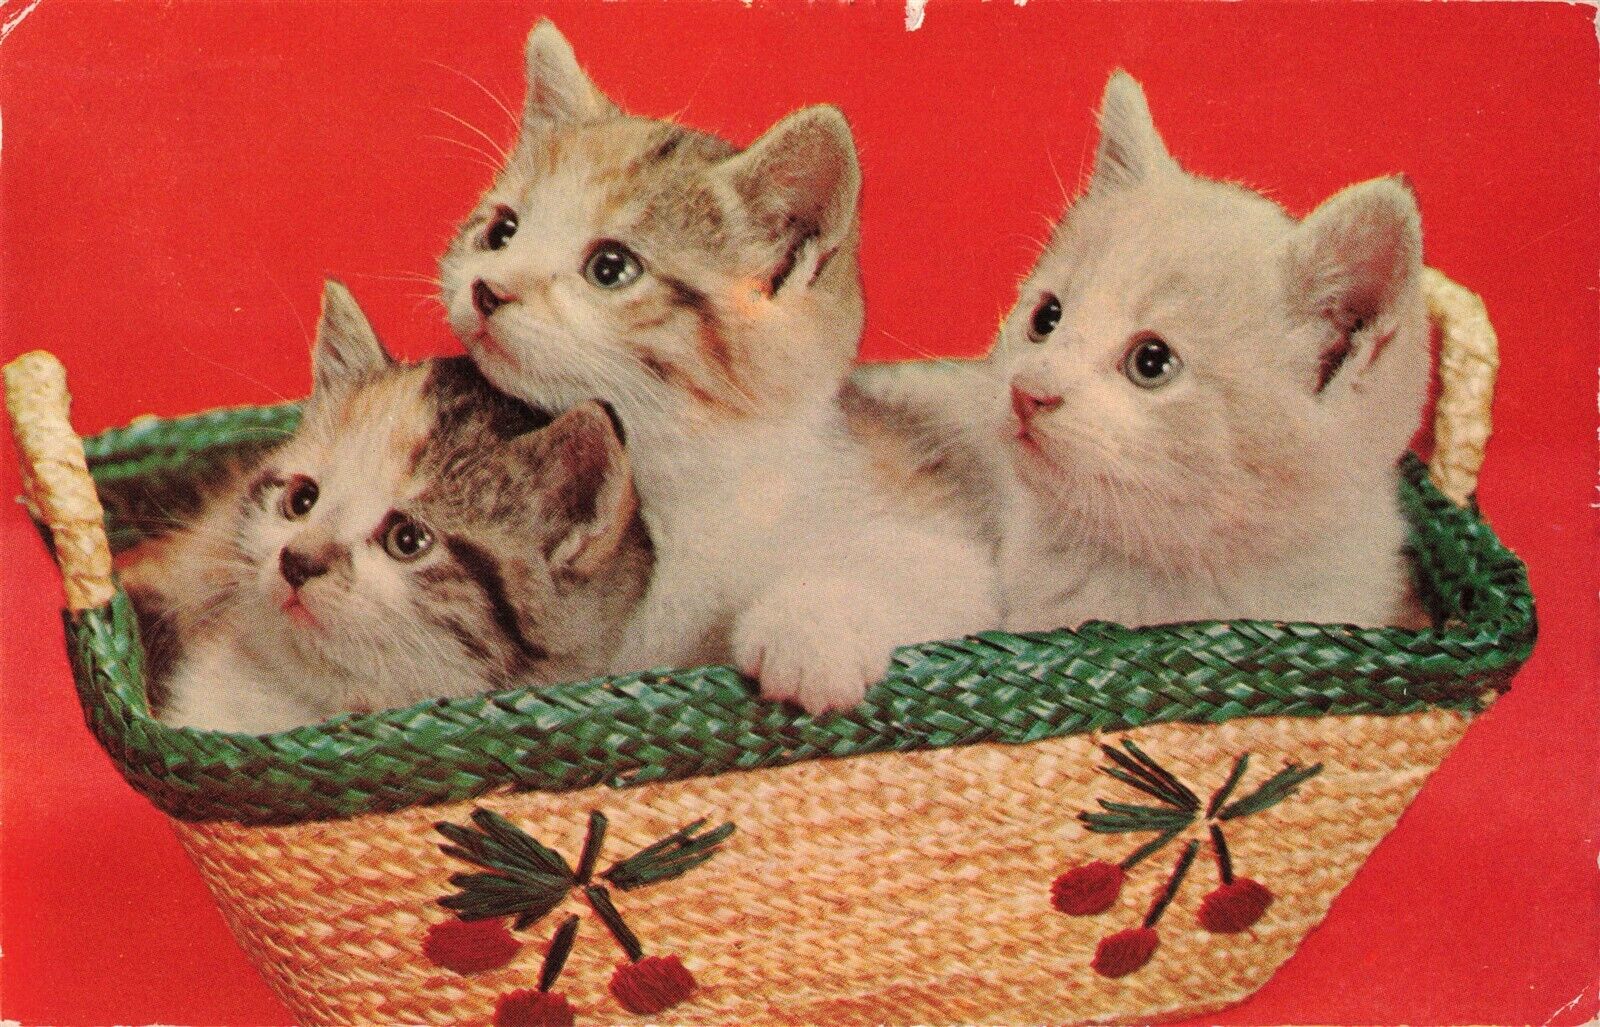 c.1957 Kittens in a Basket Postcard 2R3-53